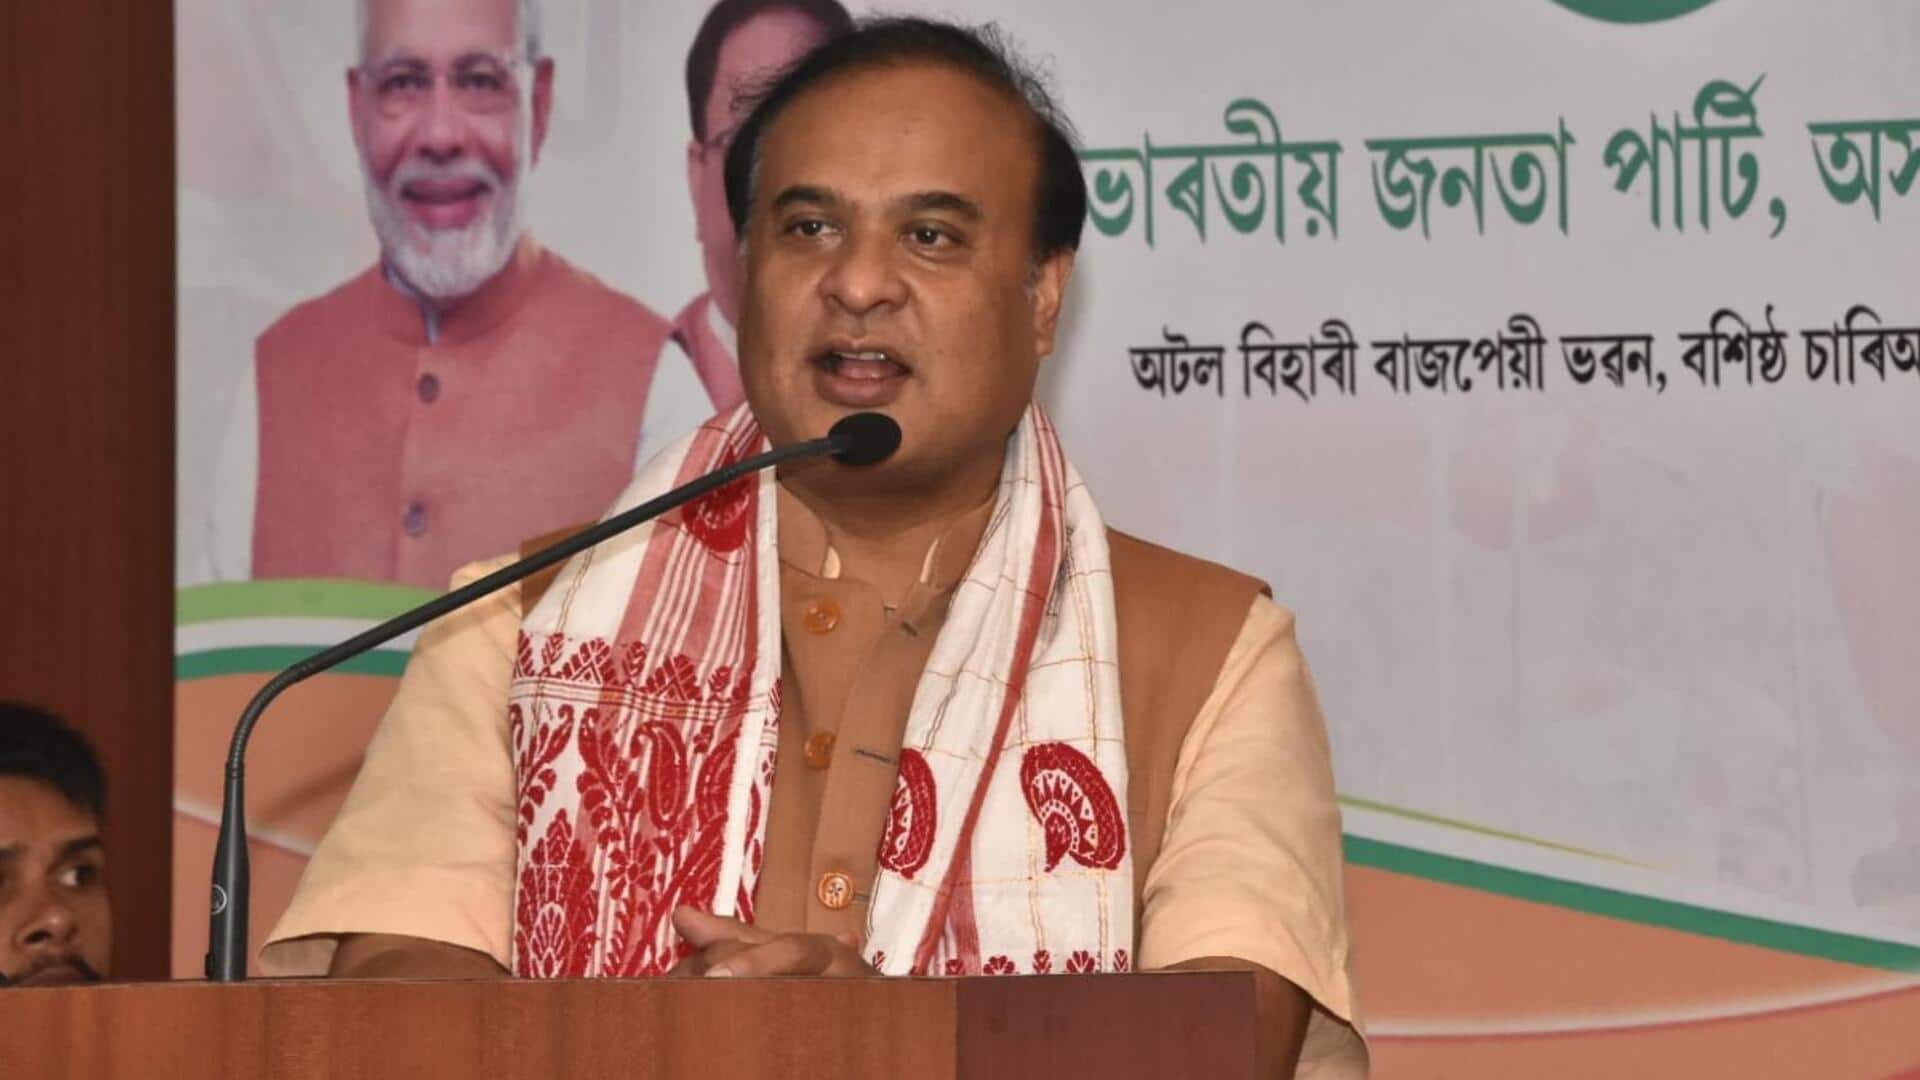 असम: मुख्यमंत्री हिमंत बिस्वा सरमा ने कुकी उग्रवादी संगठन से संबंध पर दी सफाई, आरोप नकारे